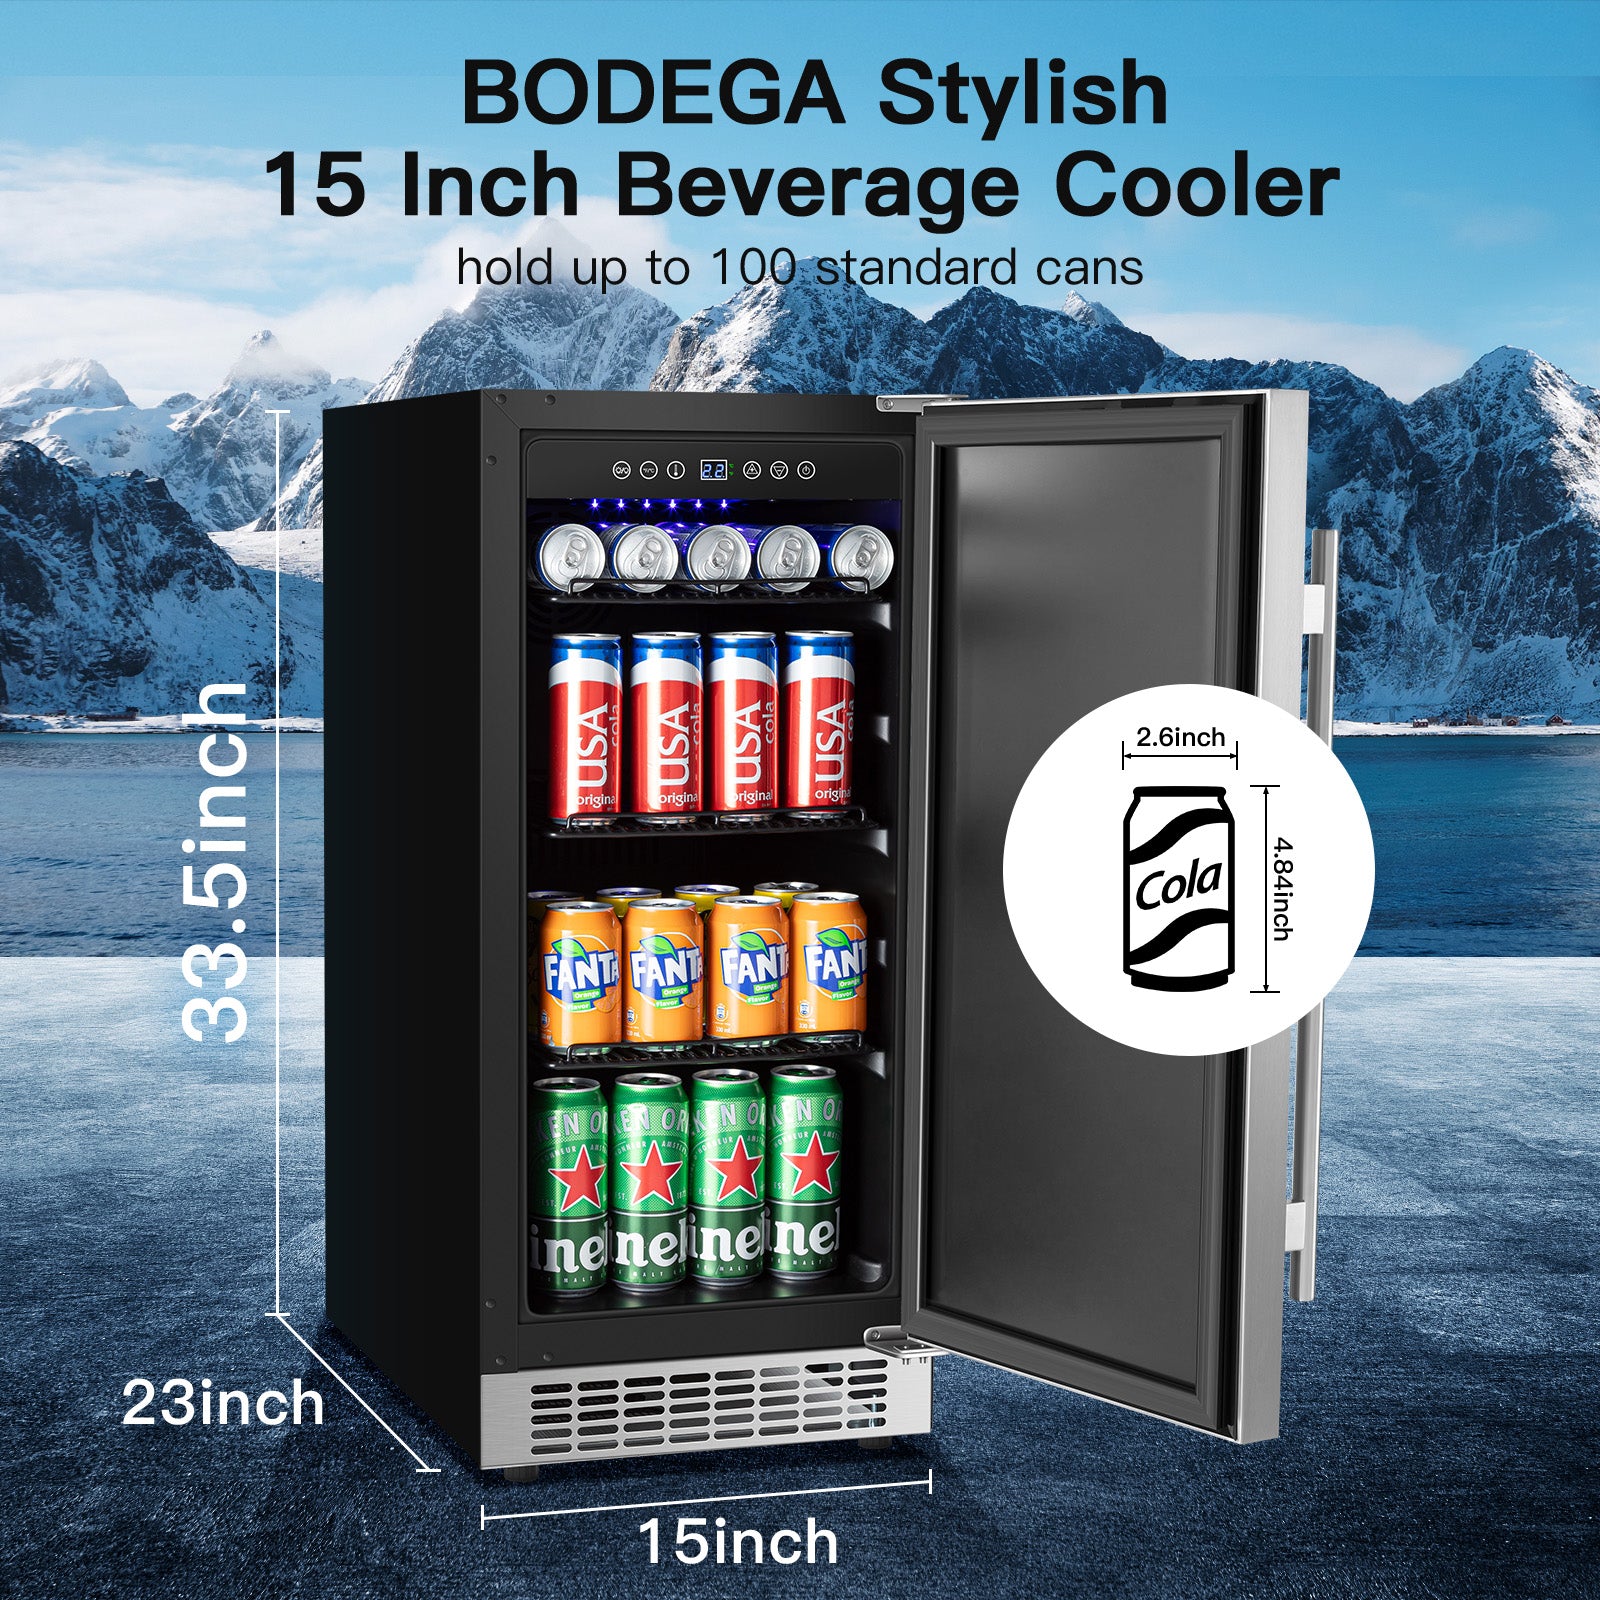 BODEGAcooler 15 Inch Beverage Cooler 100 Can